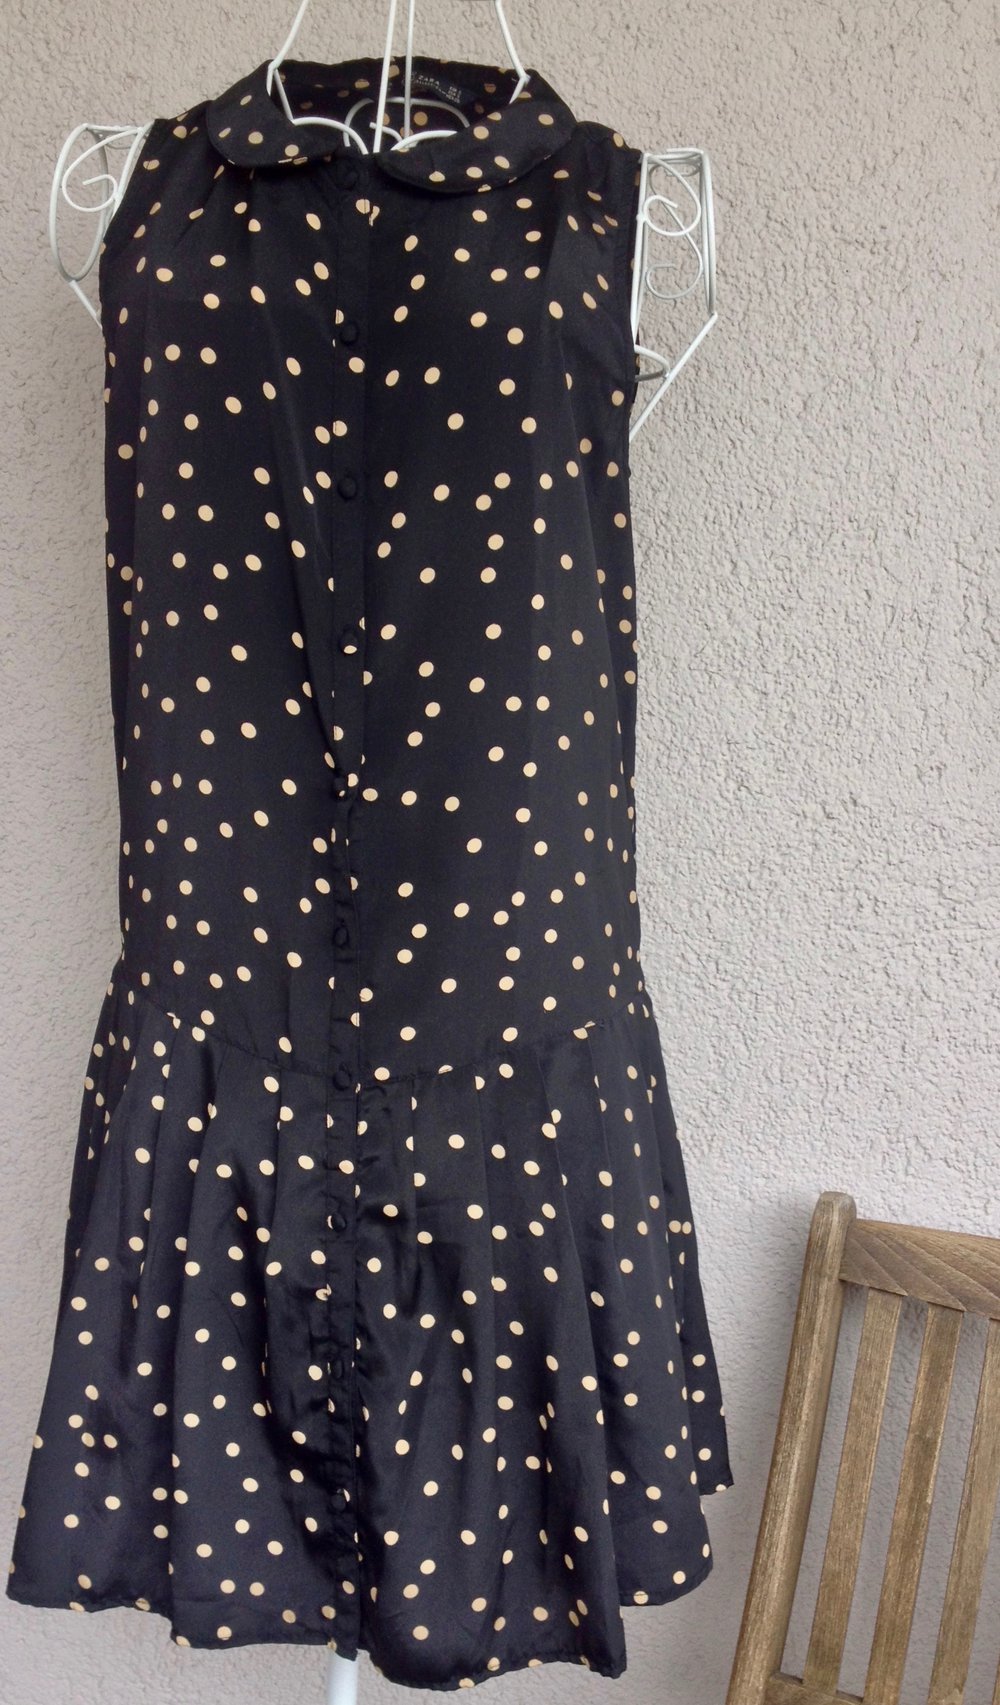 Zara wunderschönes Kleid mit Punkten :: Kleiderkorb.at